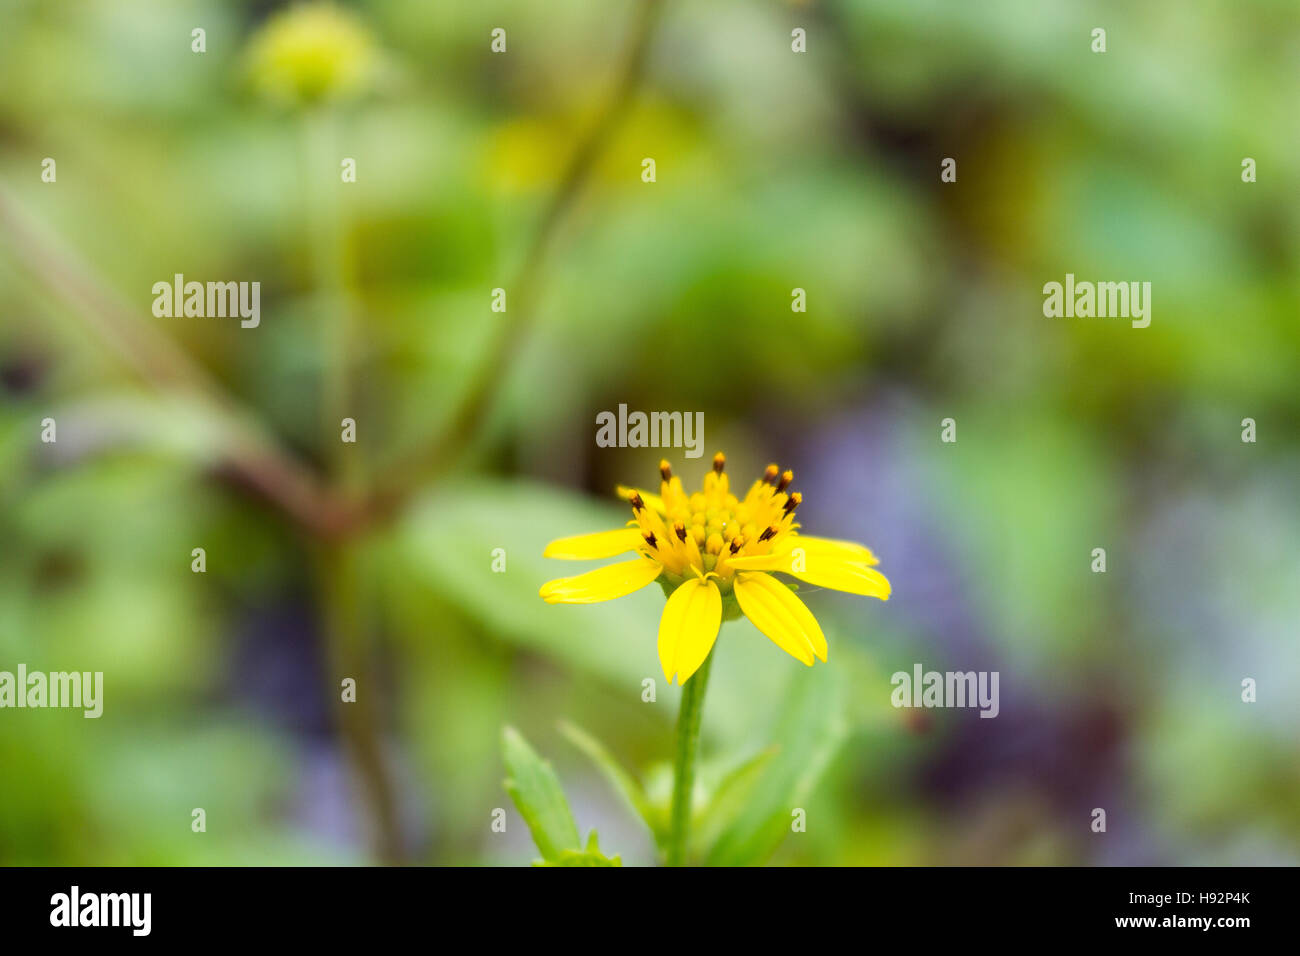 Creeping Daisy Flower Stock Photo